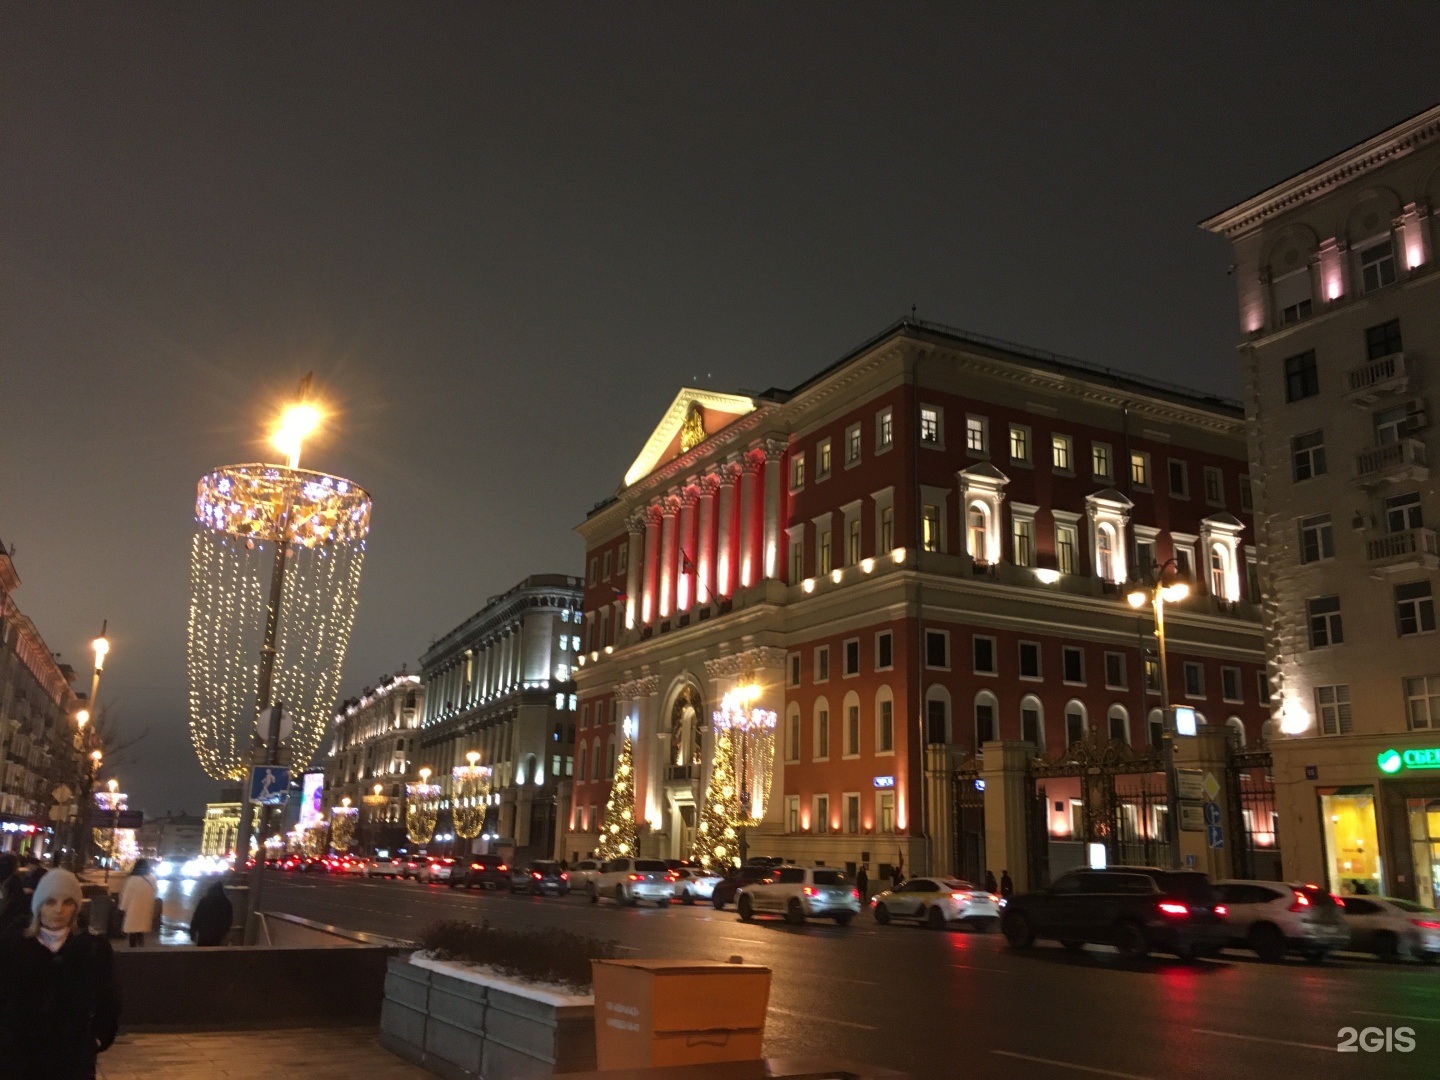 тверская улица в москве сейчас